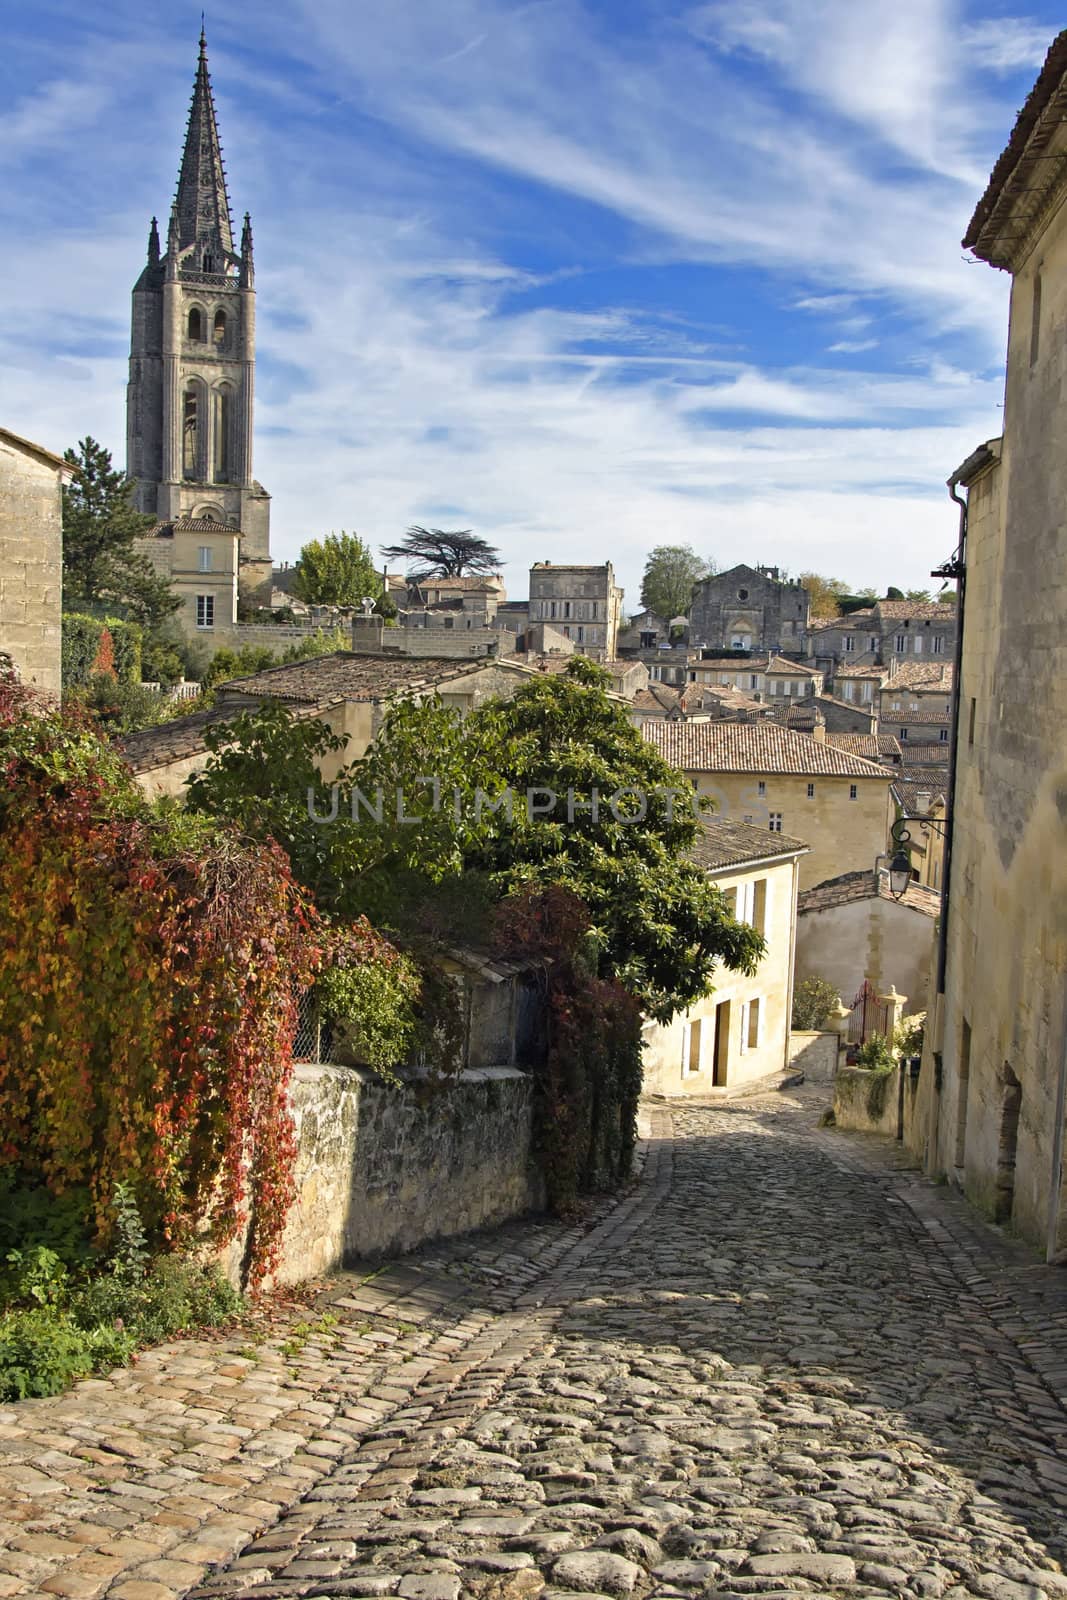 Cobbled Street of Saint Emilion in Bordeaux - A Unesco World Heritage Site.